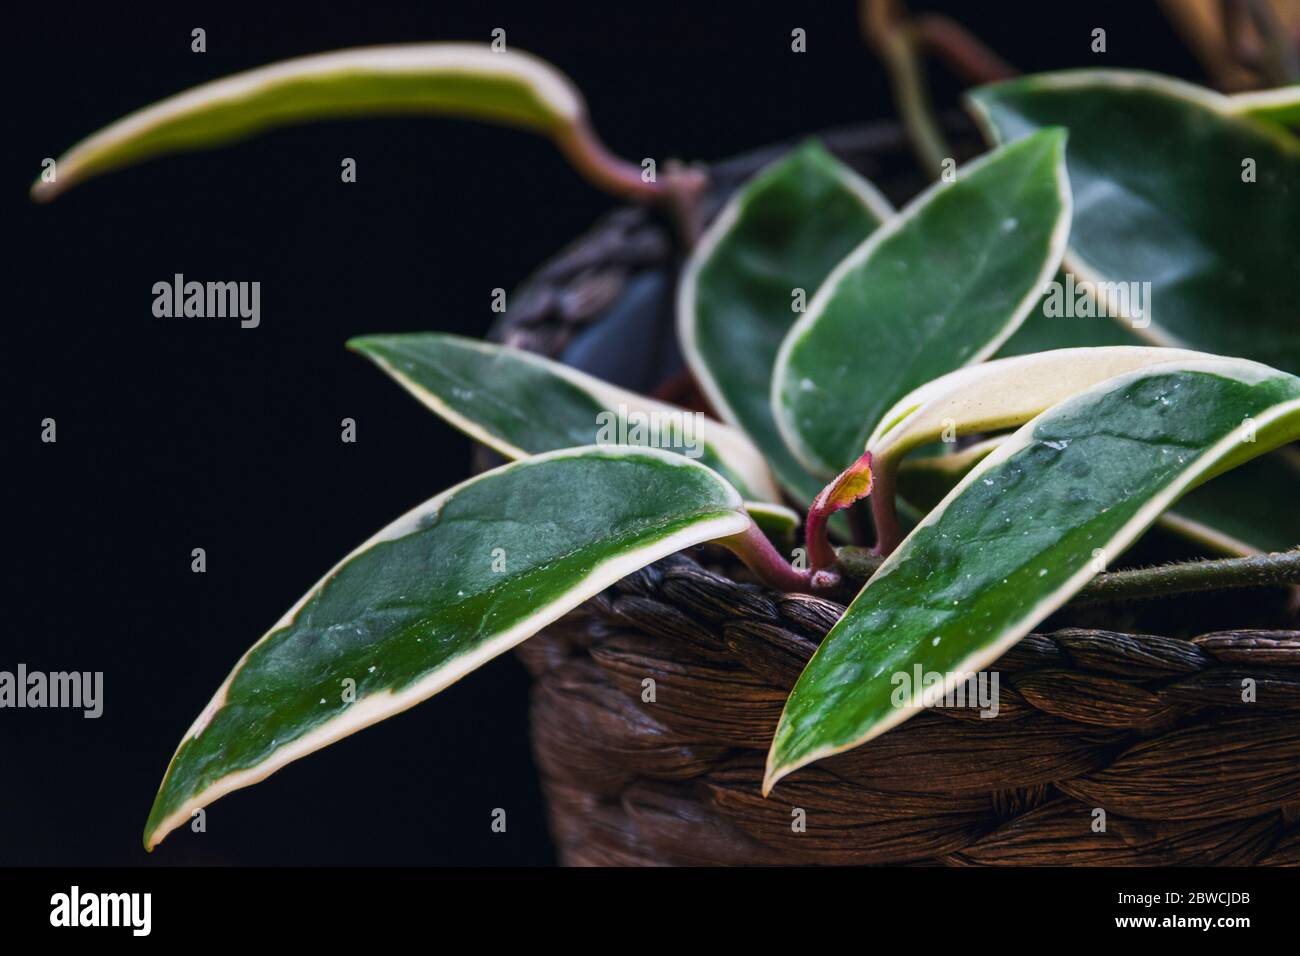 Hoya carnosa variegata "Krimson Queen" con foglie variegate su sfondo nero. Esotico dettaglio di piante casalinghe alla moda con una notevole varietà. Foto Stock